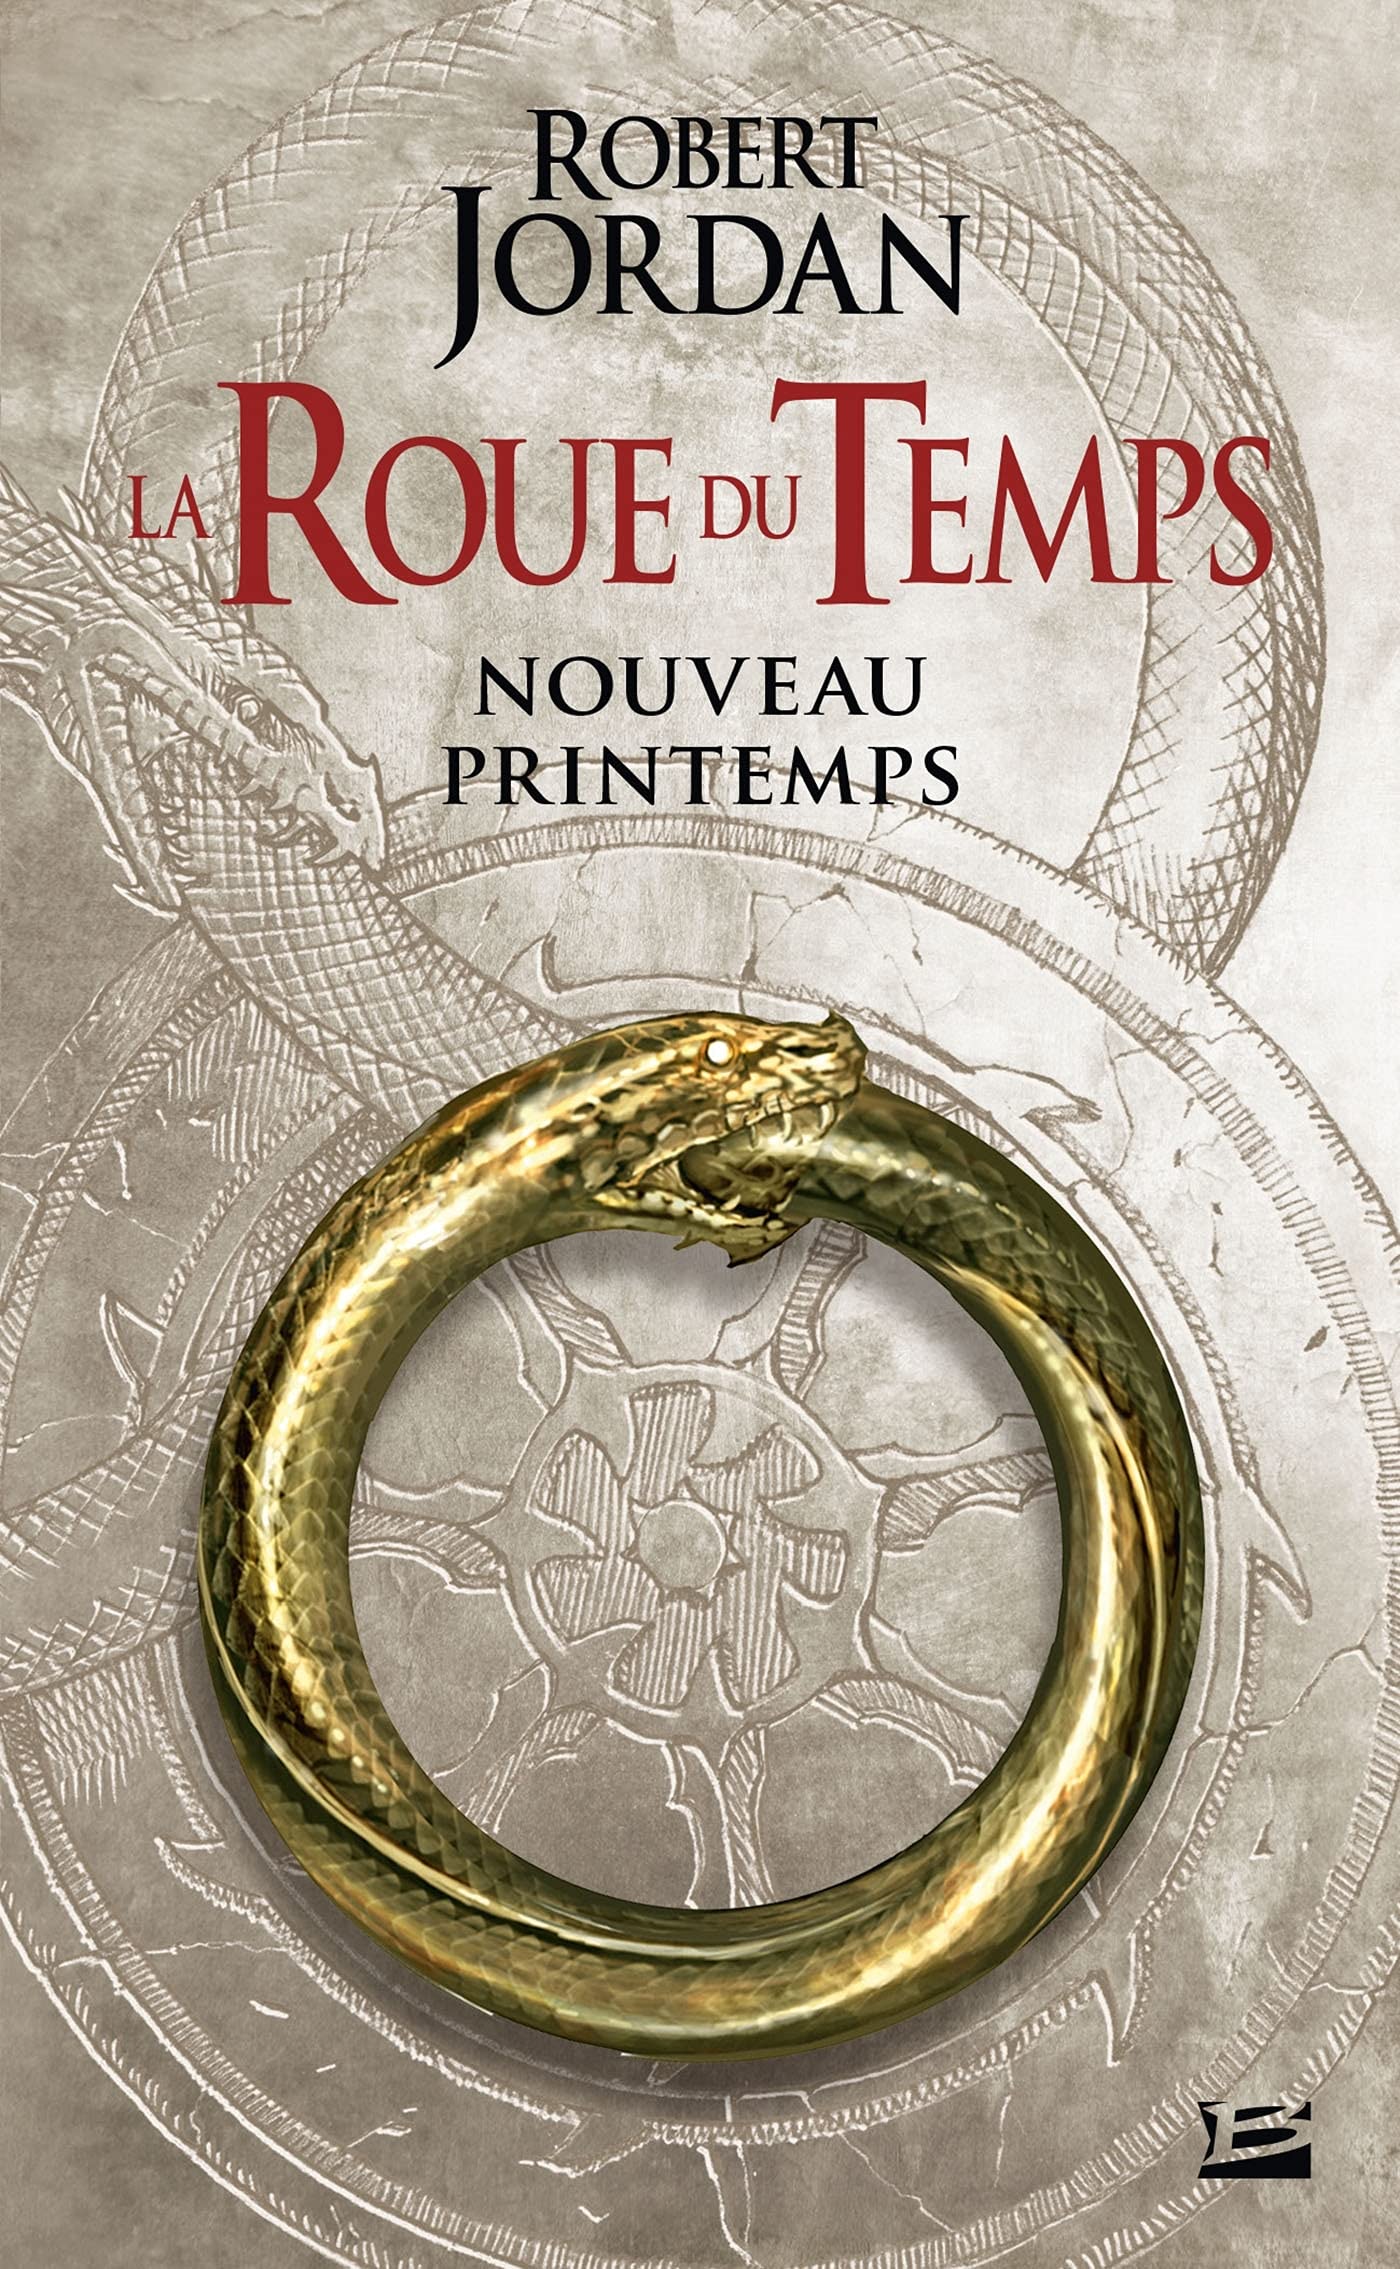 La Roue du Temps – Nouveau printemps / The Wheel of Time